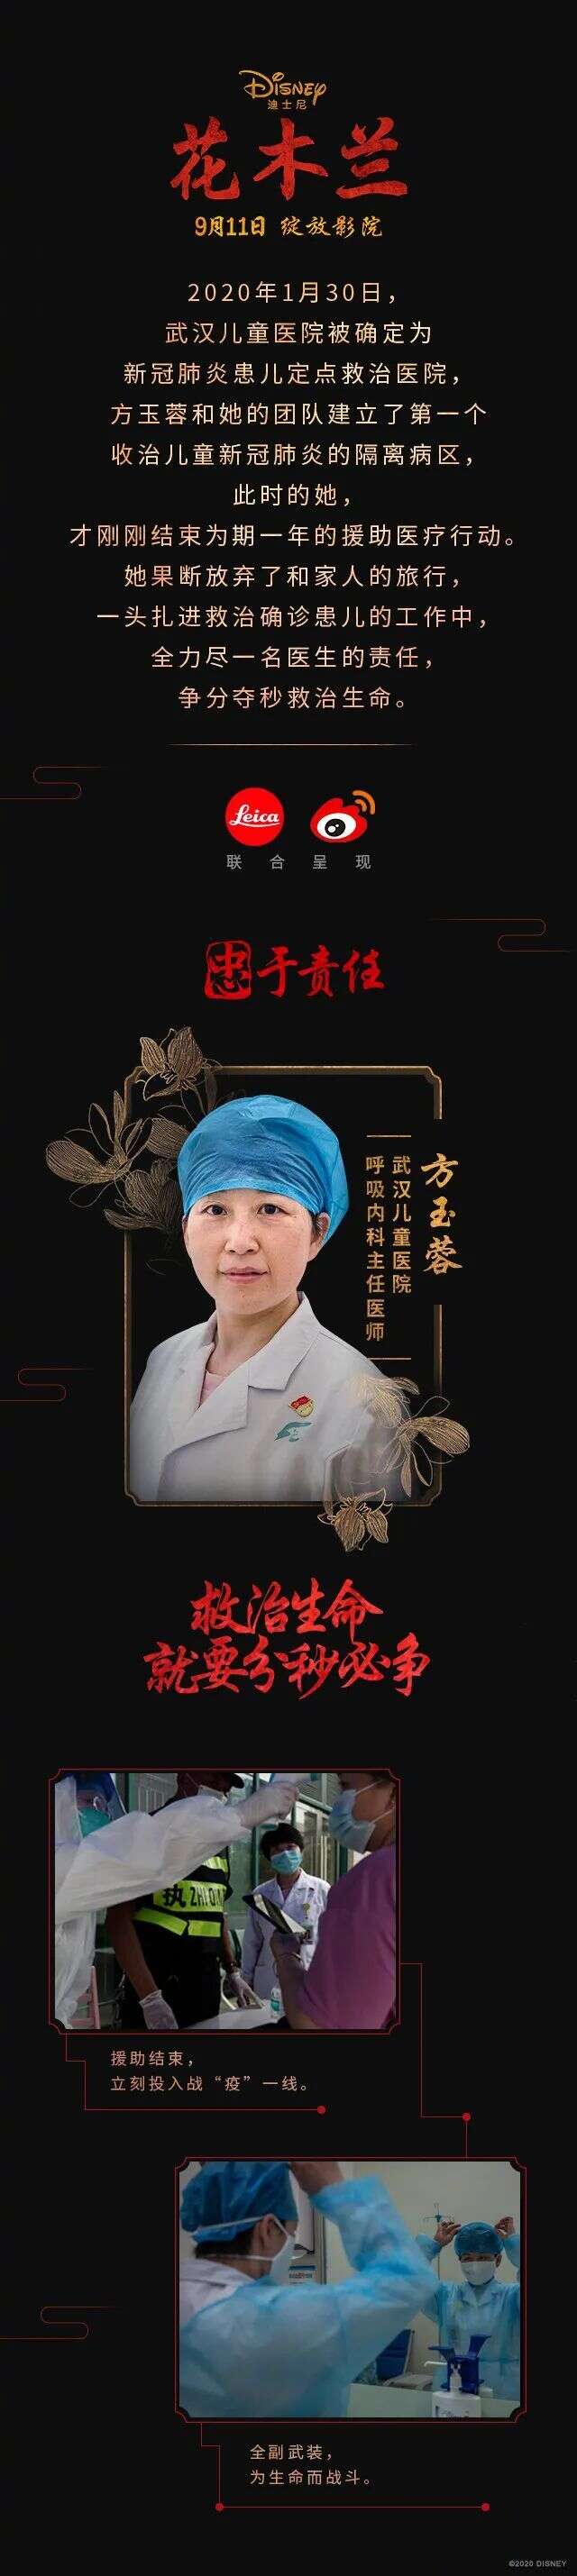 四川茶艺术推广大使王霏被推荐为“当代花木兰”